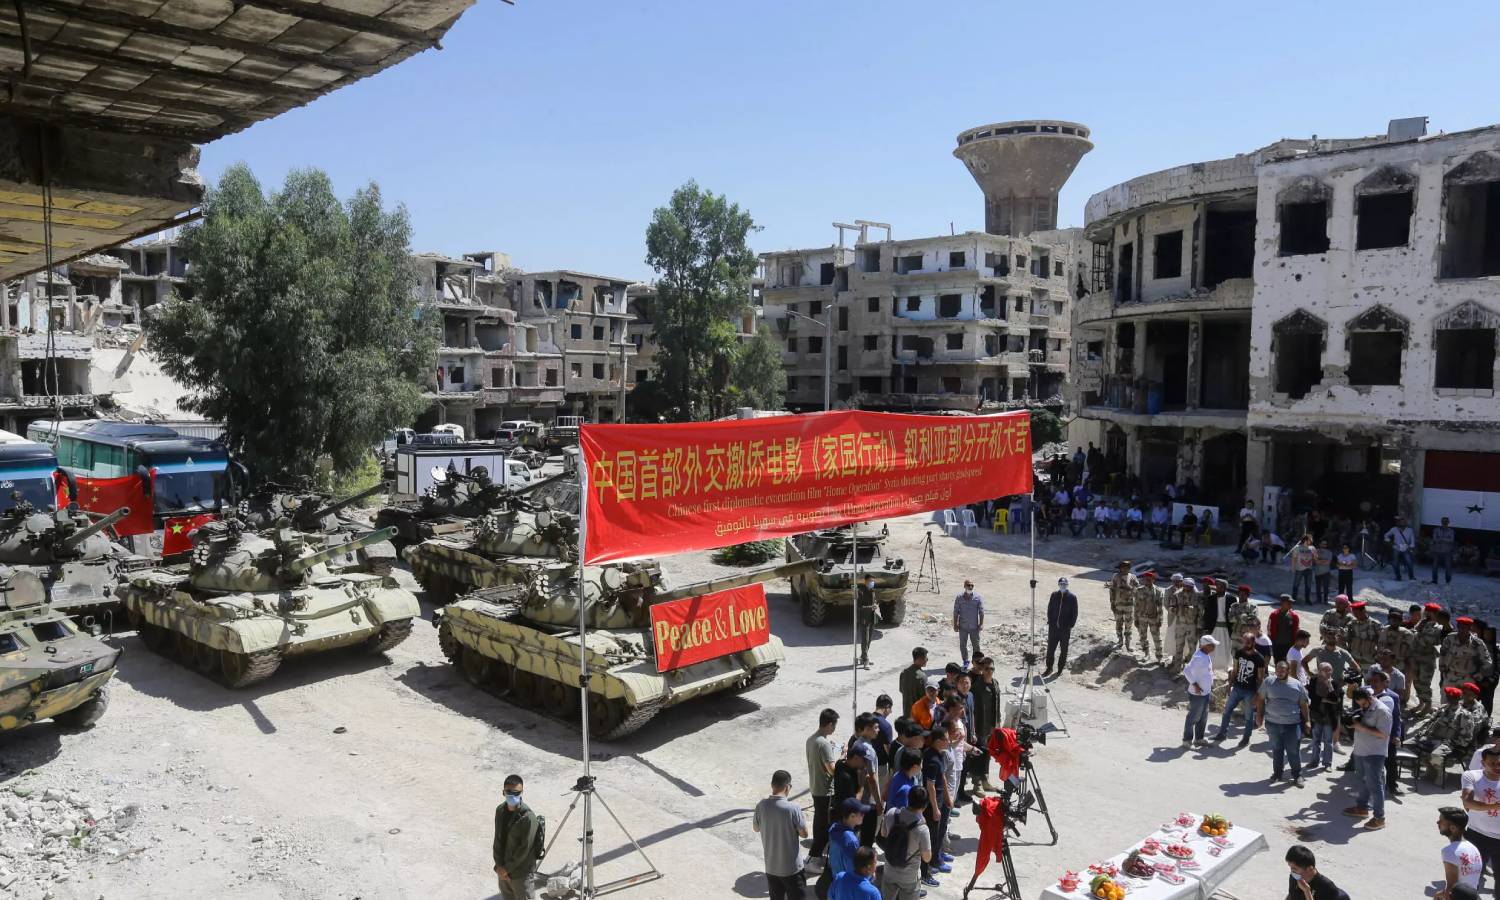 من موقع تصوير فيلم "Home Operation" الصيني في ريف دمشق (AFP)